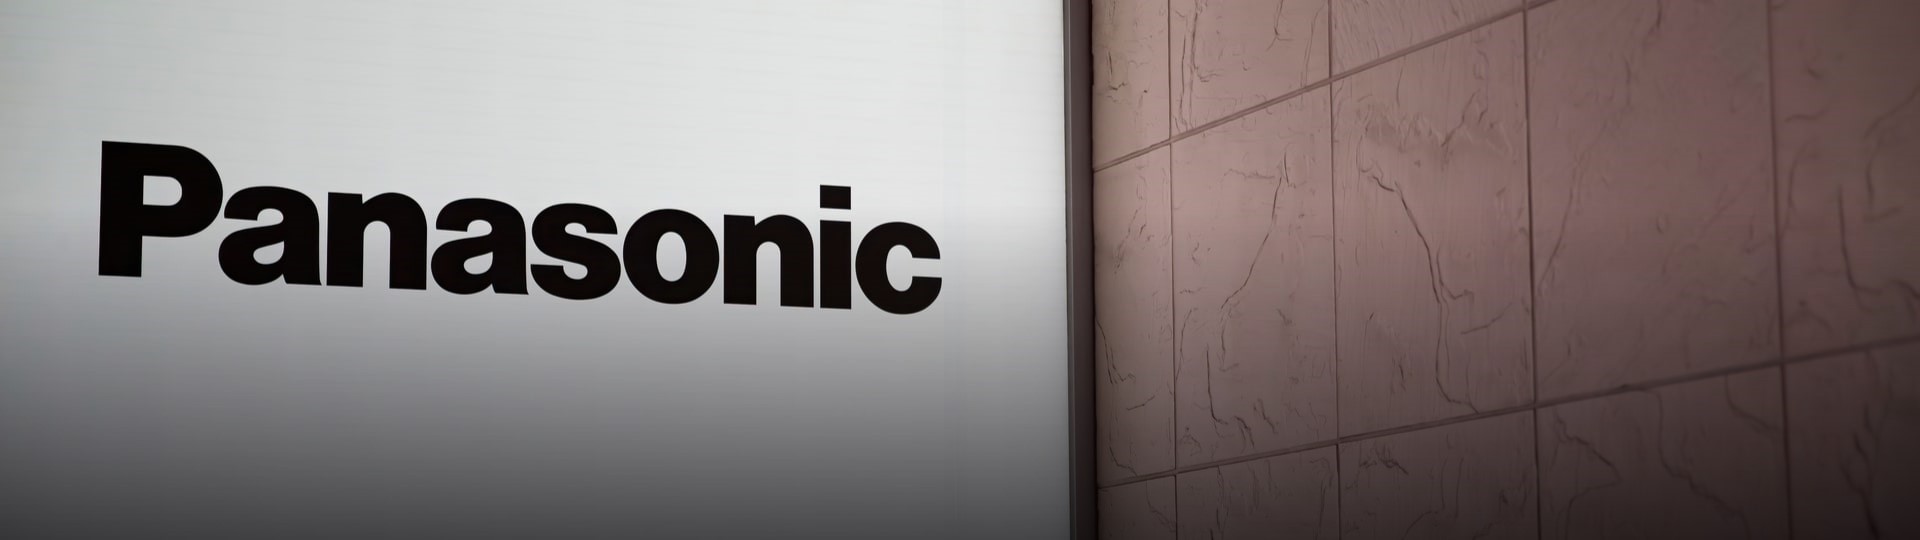 Panasonic v největší akvizici za deset let kupuje americkou firmu Blue Yonder